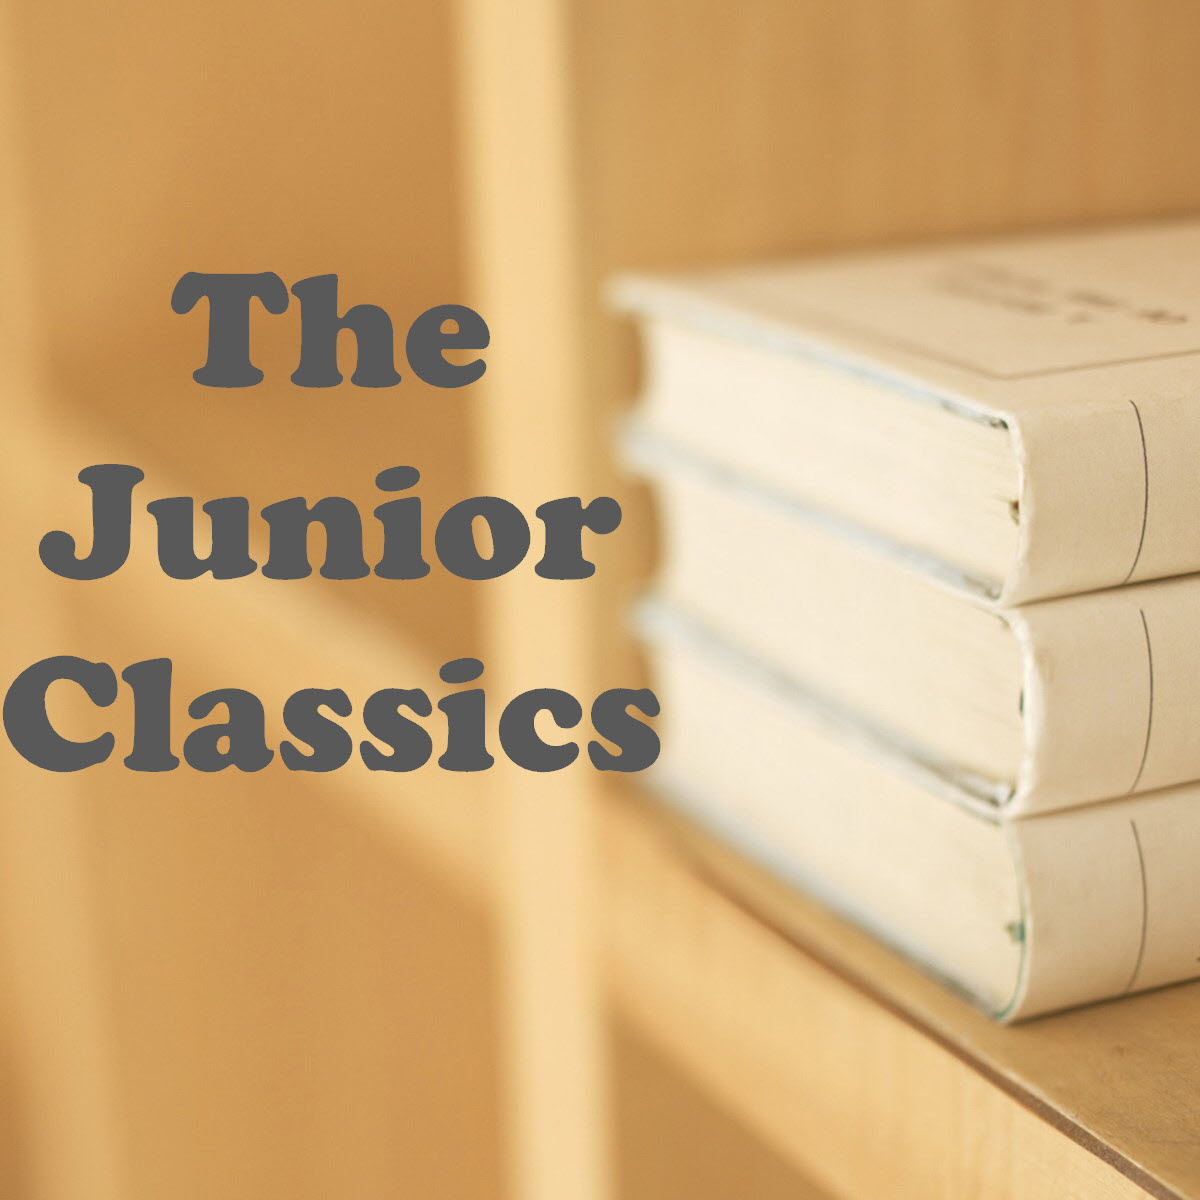 The Junior Classics